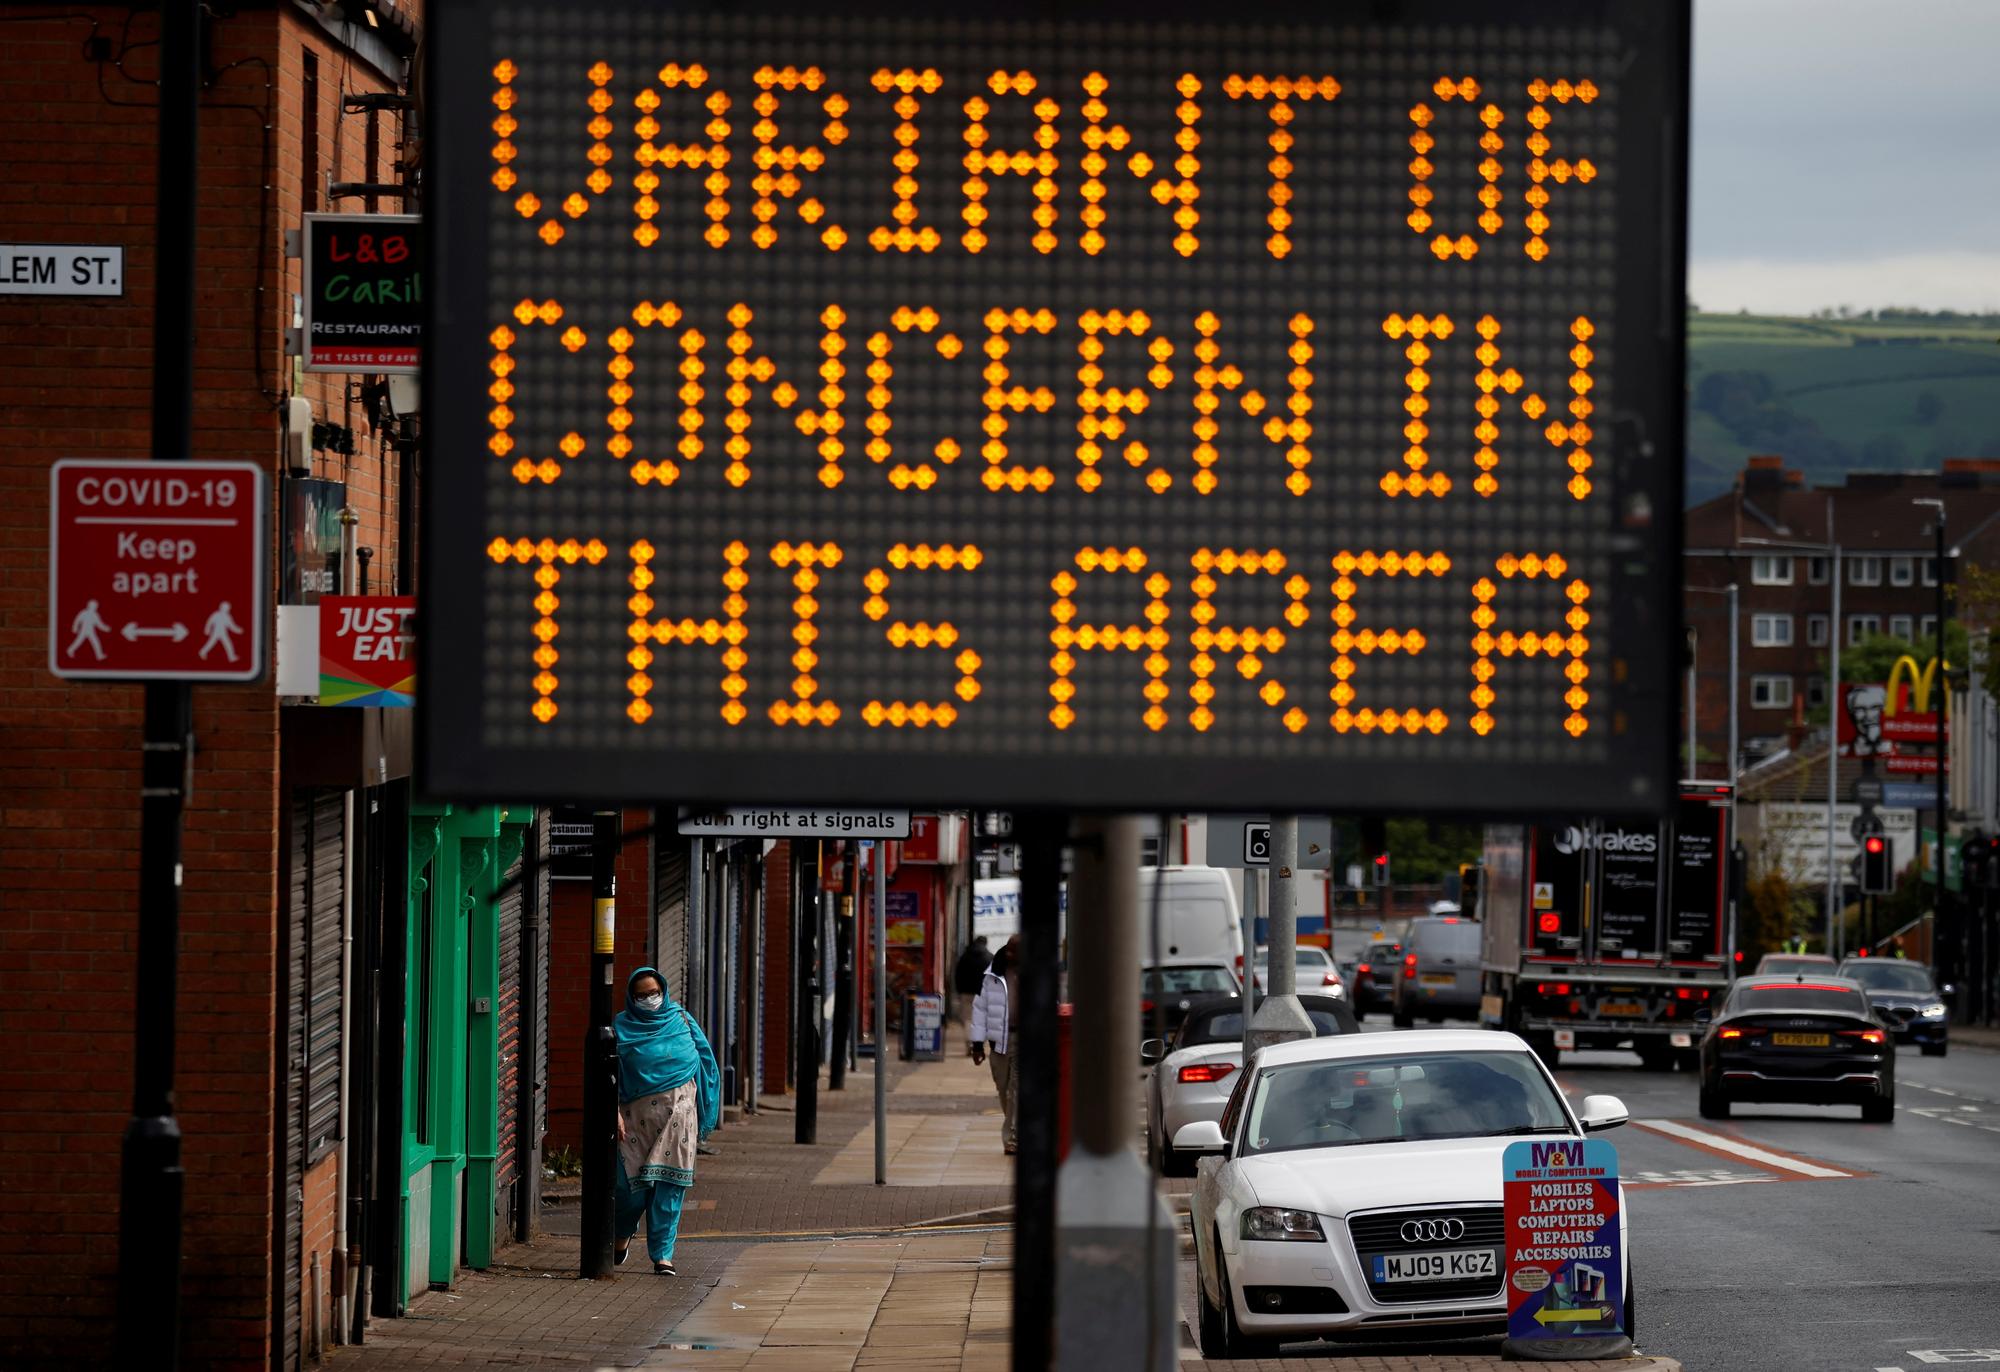 "Variant concernant dans cette zone", annonce ce panneau lumineux dans la ville de Bolton. Angleterre, le 17 mai 2021. [Reuters - Phil Noble]